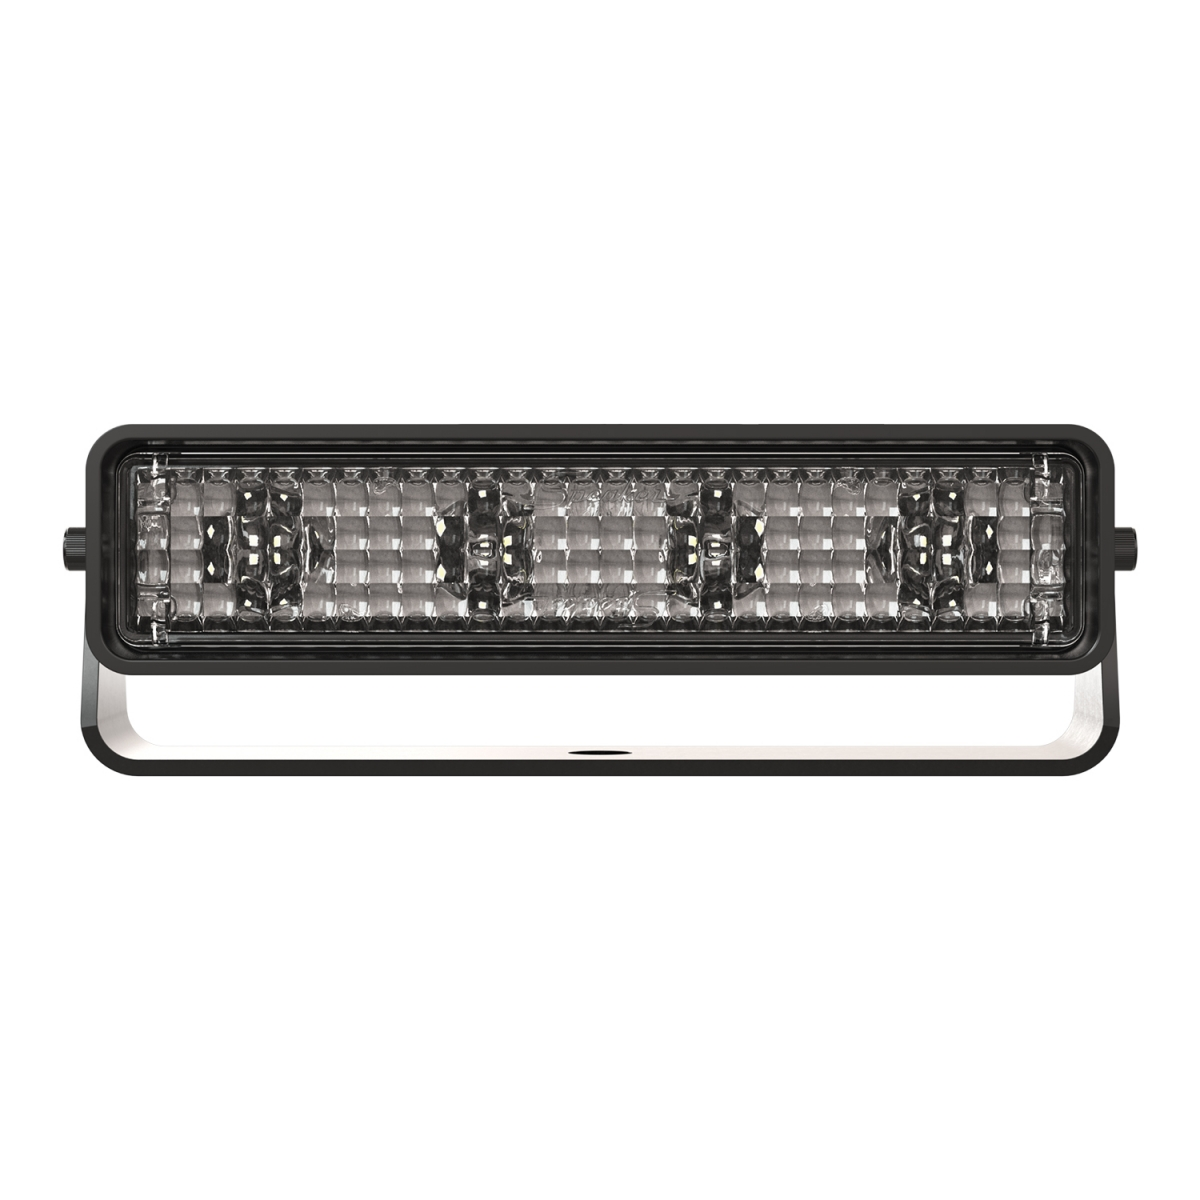 LED Work Light – Model 783 XD